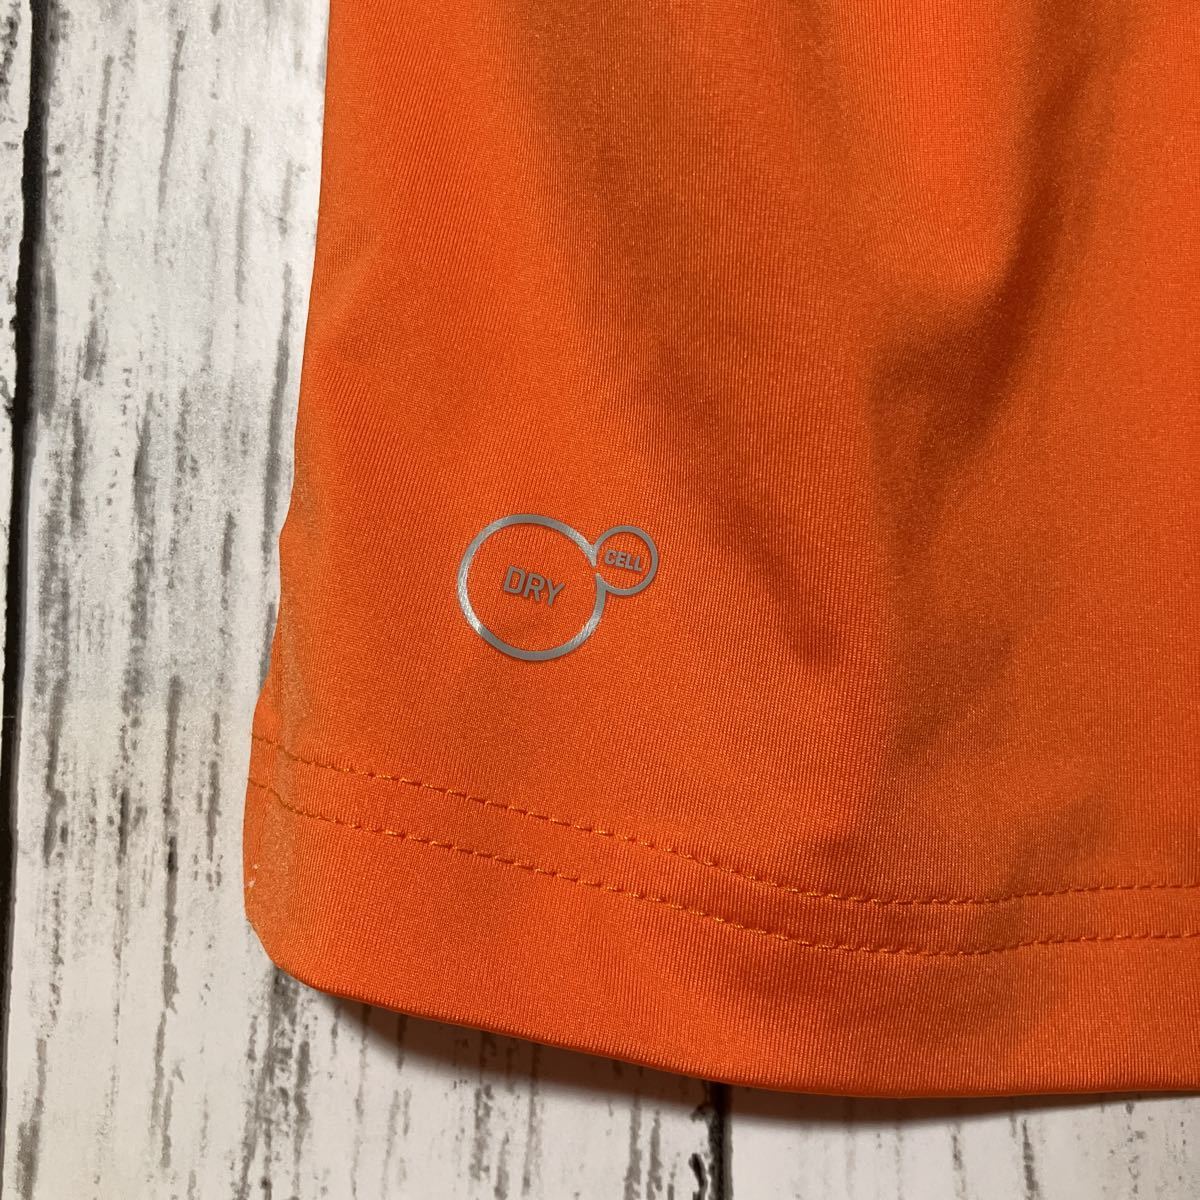 [PUMA GOLF] Puma Golf мужской рубашка-поло с коротким рукавом L размер orange стрейч материалы бесплатная доставка 